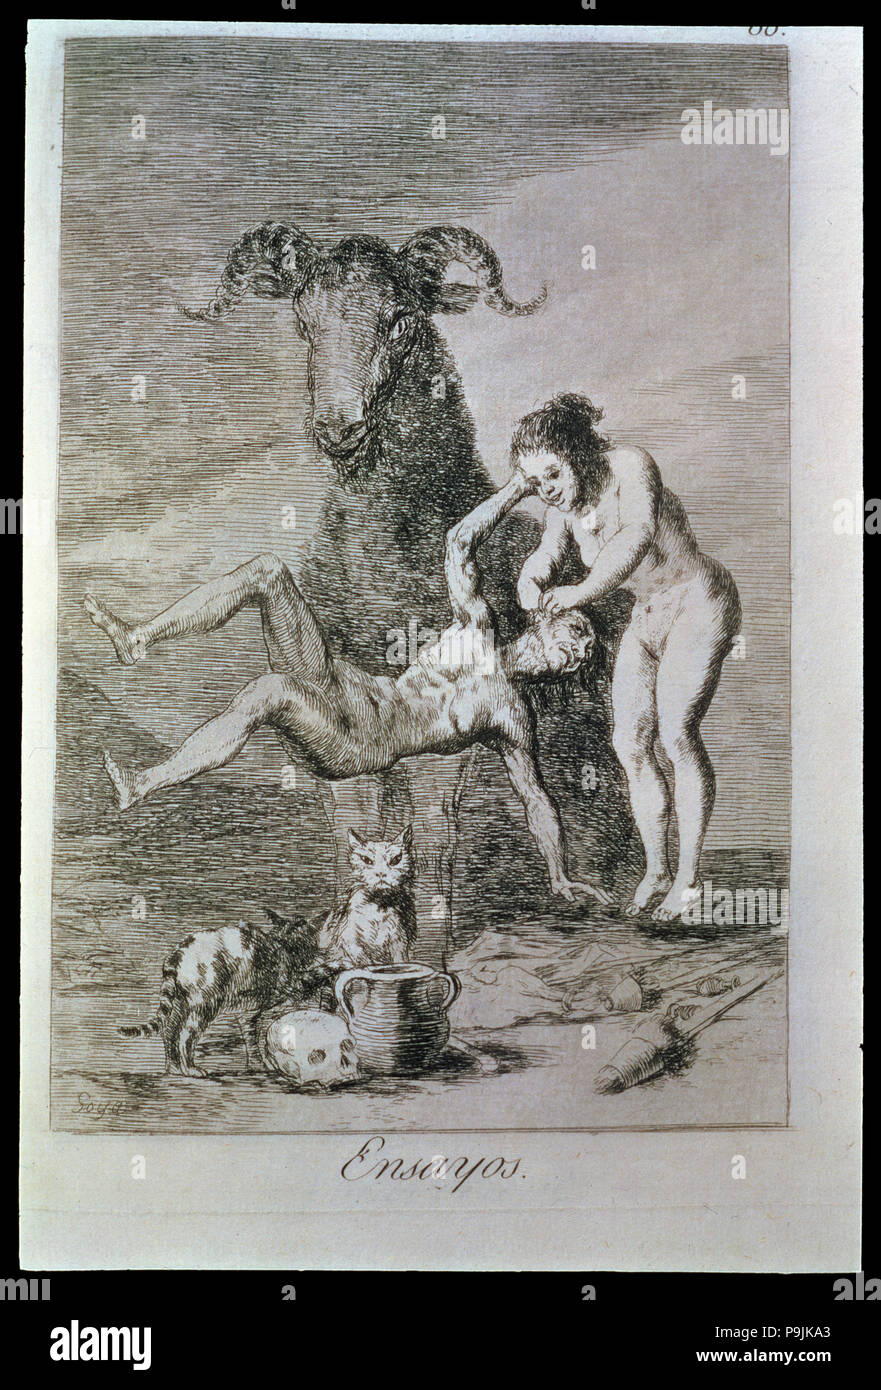 Los Caprichos, series of etchings by Francisco de Goya (1746-1828), plate 60: 'Ensayos' (Trials),… Stock Photo